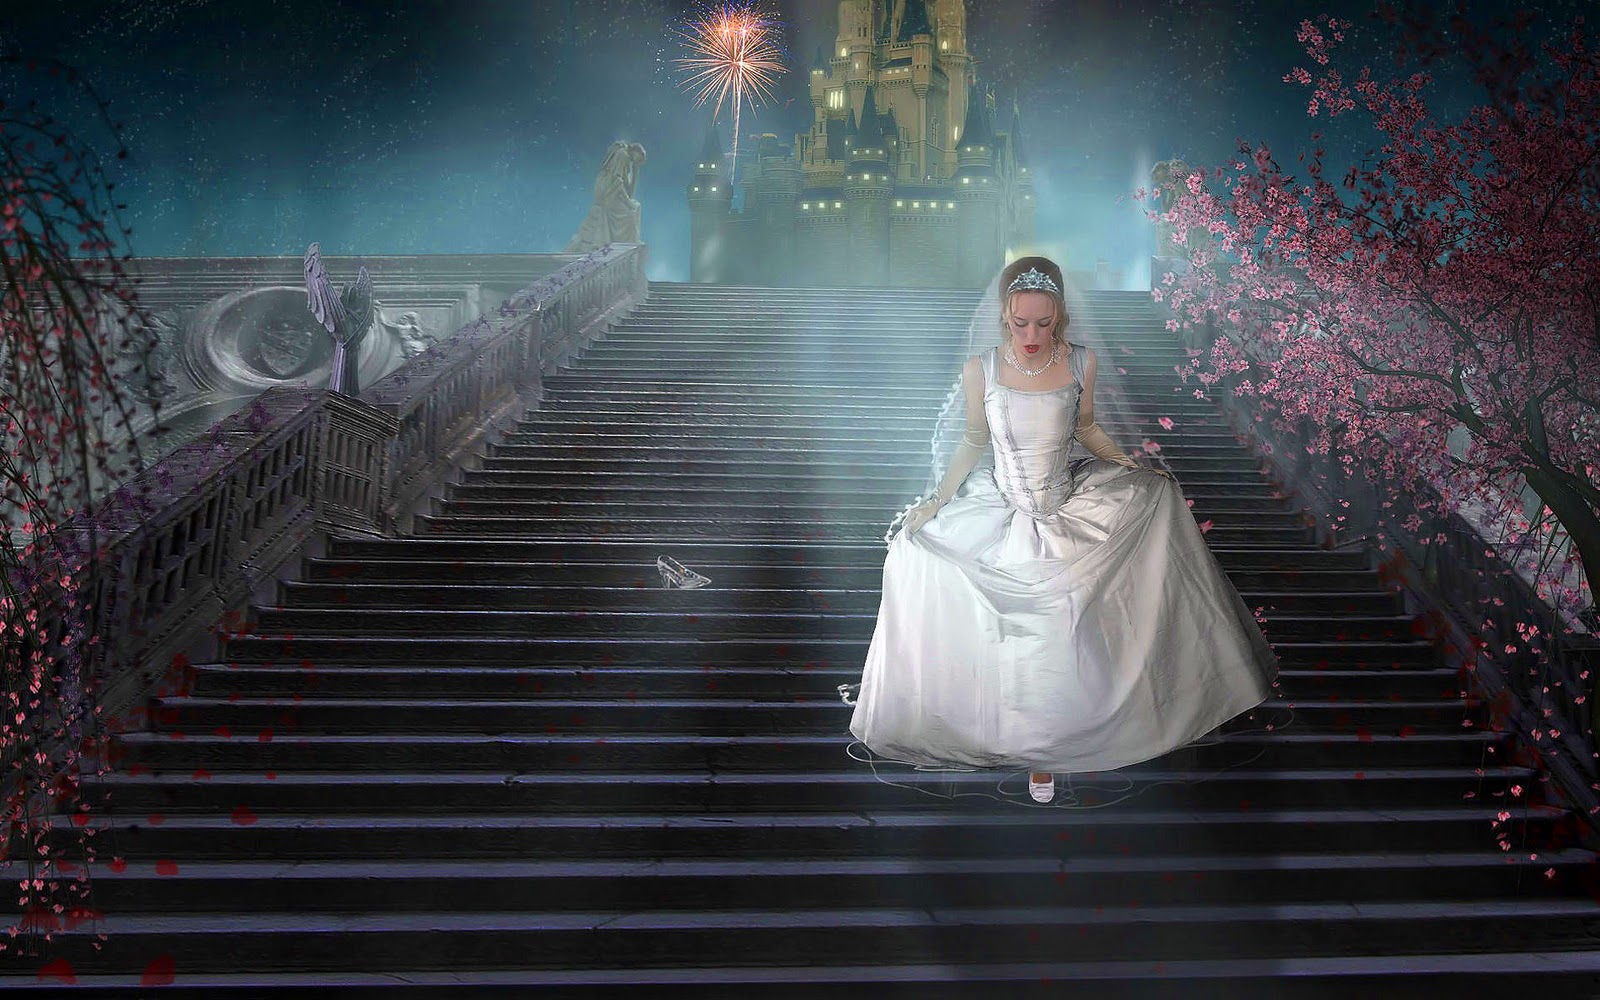 Real Cinderella Images Hd - 1600x1000 Wallpaper 